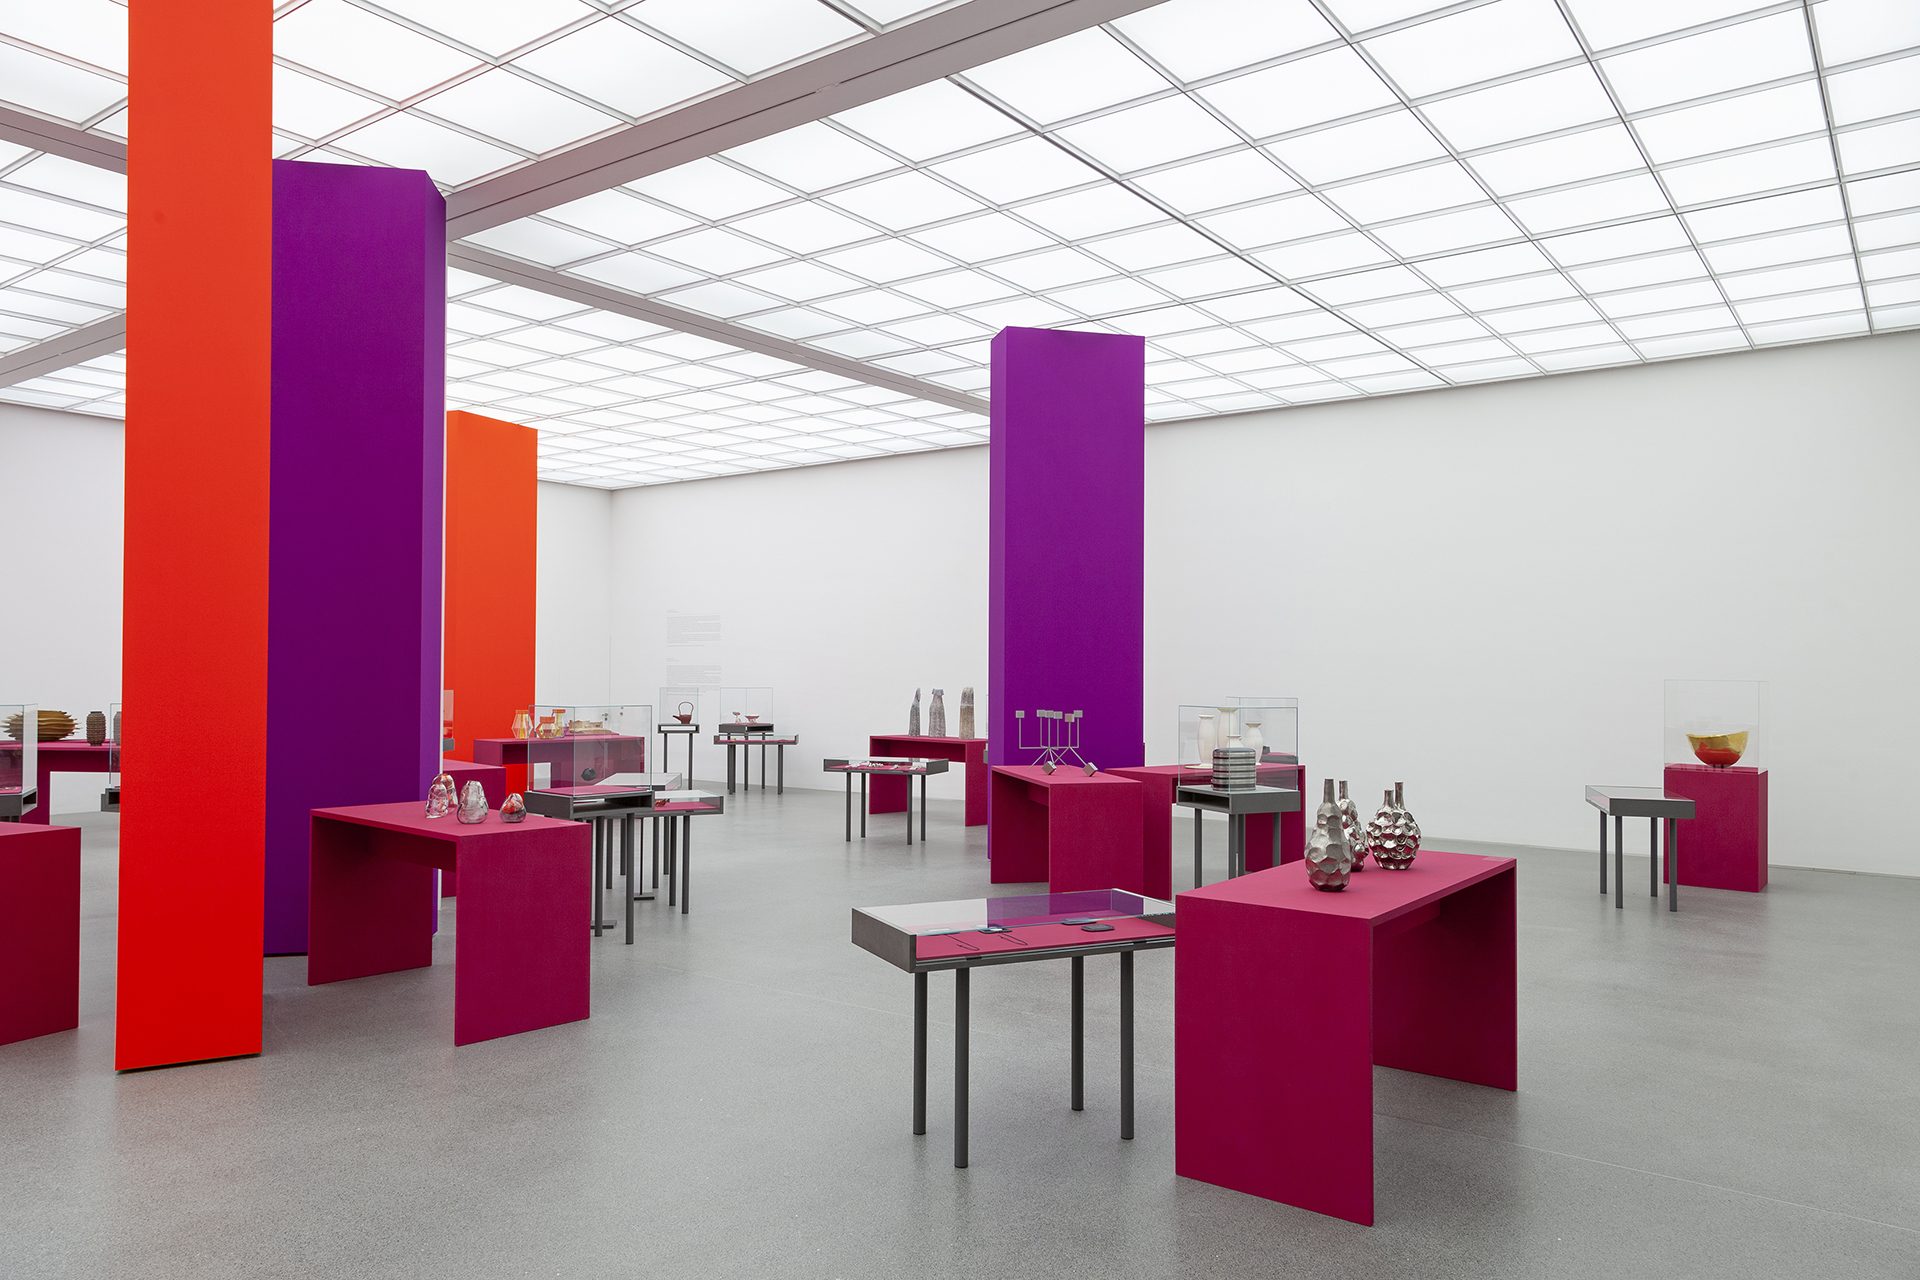 Blick in die Ausstellung "Danner-Preis 2020. 100 Jahre Danner-Stiftung", rote und lila Säulen im Raum, auf pinken Podesten/ Vitrinen sind die Objekte ausgestellt.